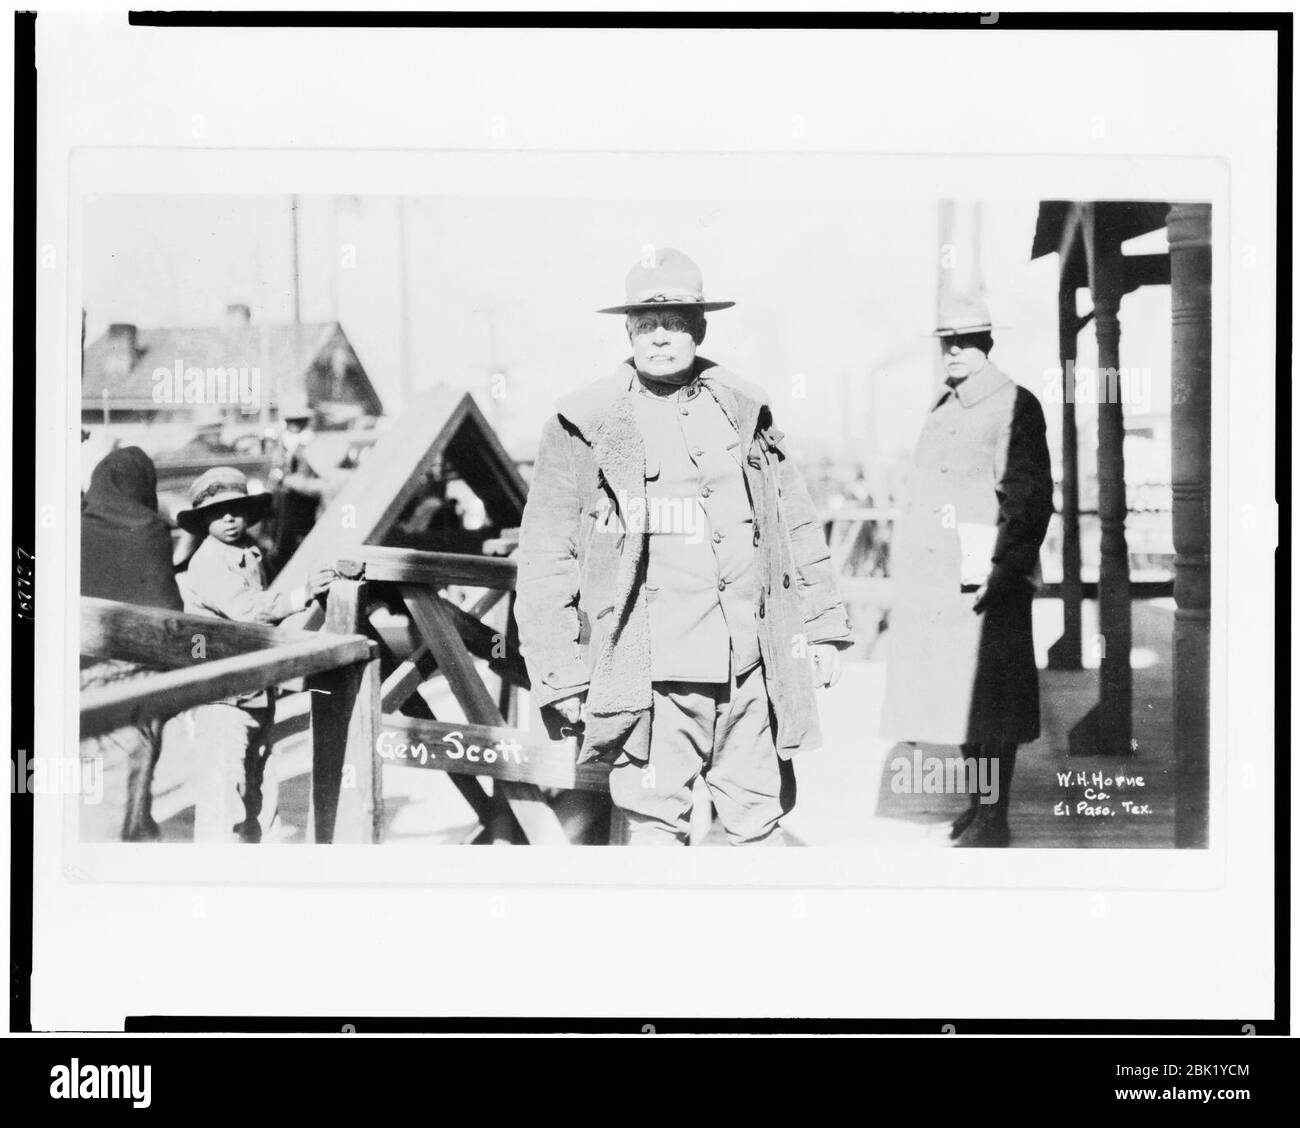 Hugh L. Scott, portrait de trois quarts de longueur, debout, face légèrement à gauche, pendant la révolution mexicaine) - W.H. Horne Co., El Paso, Texas Banque D'Images